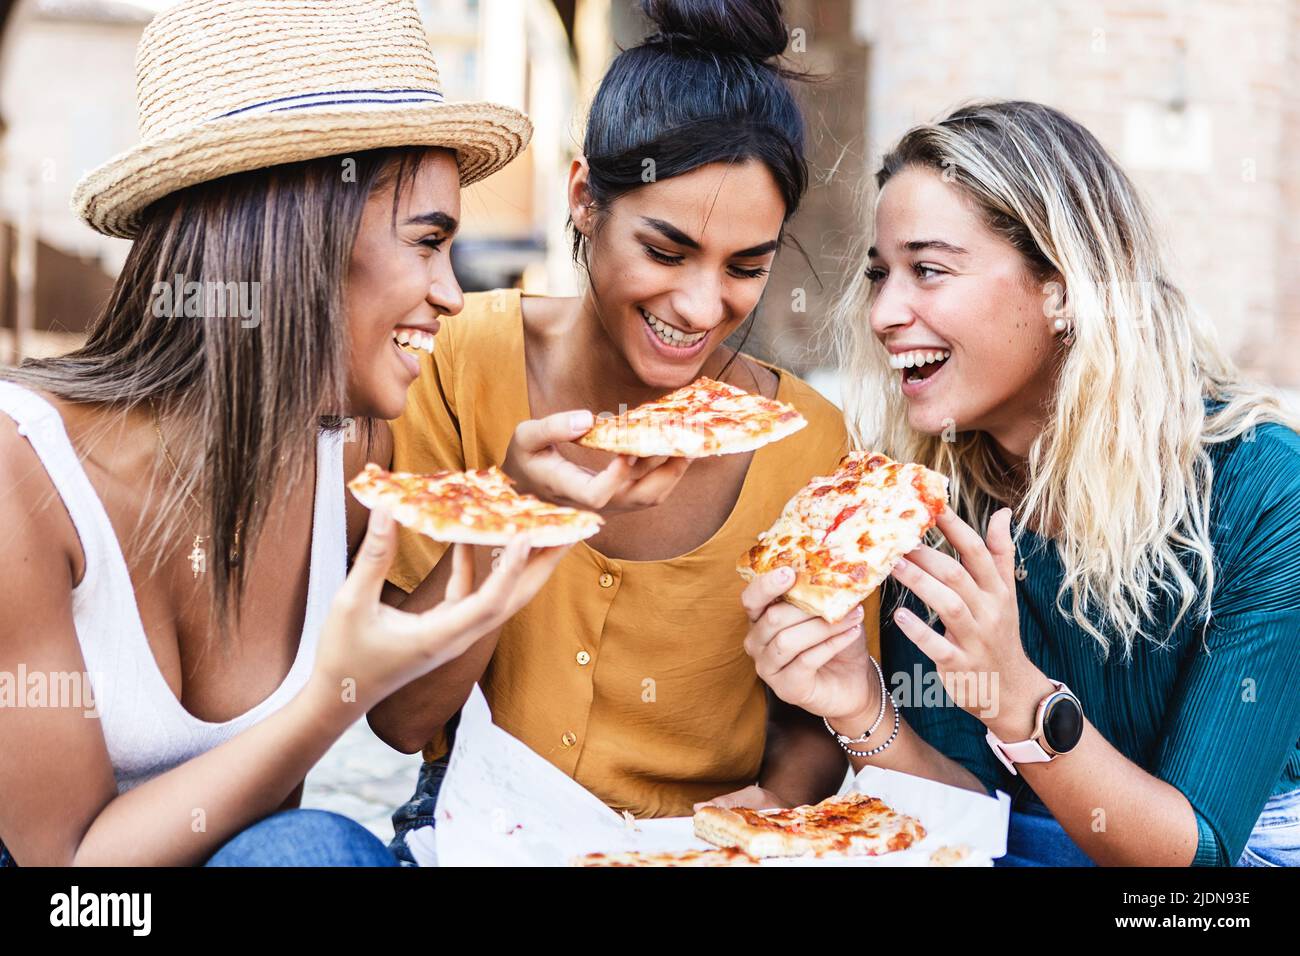 Trois amies multiraciales qui mangent de la pizza italienne pendant les vacances d'été Banque D'Images